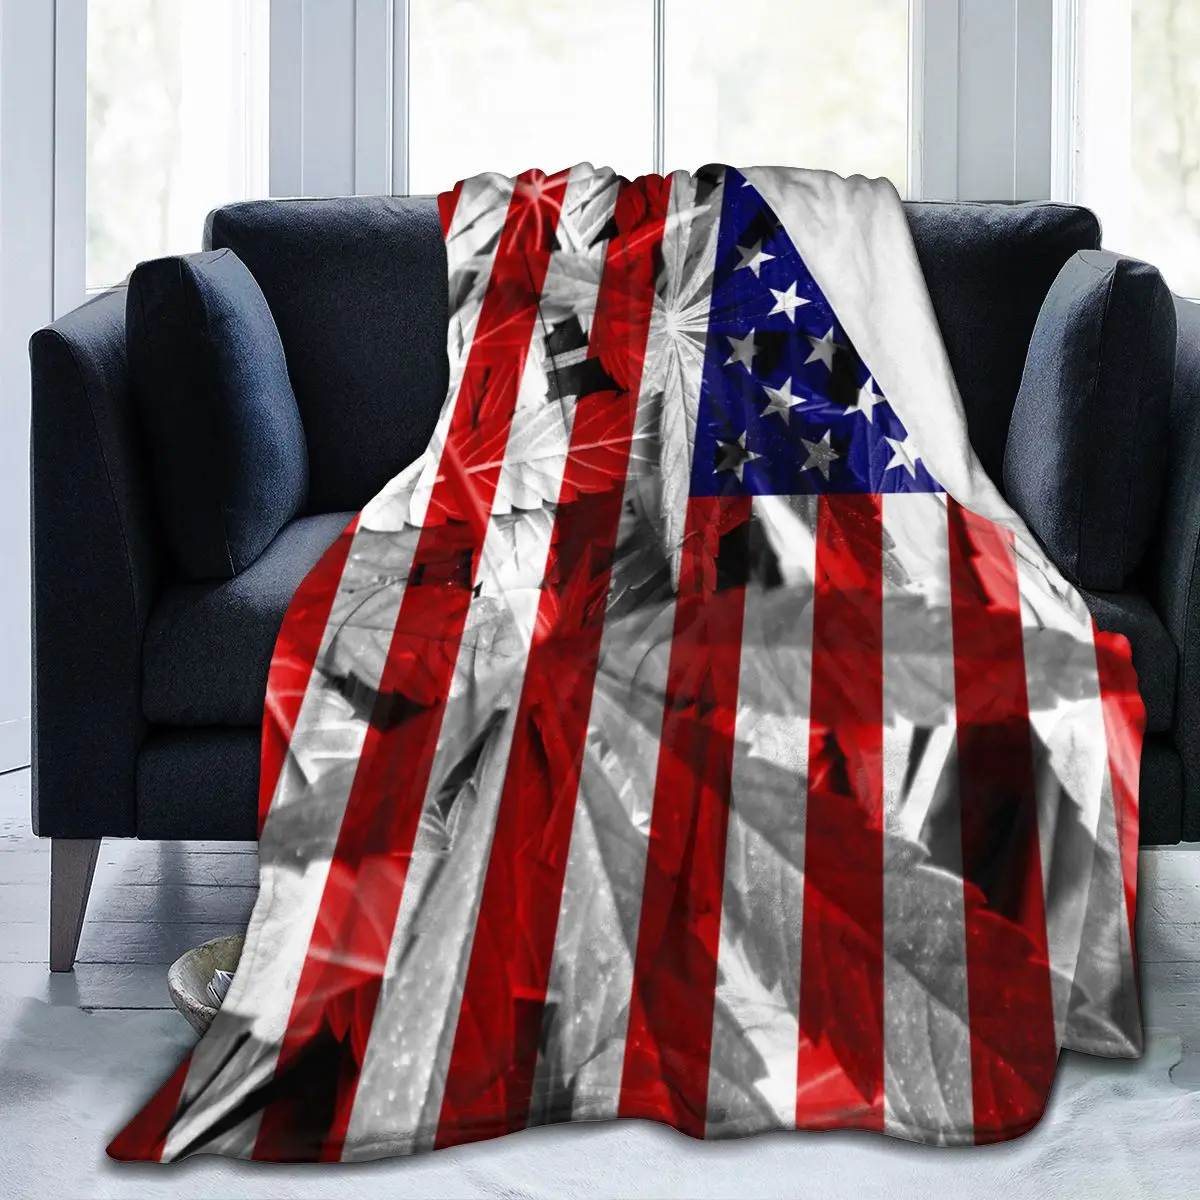 Фланелевое Одеяло Флаг на САЩ Меко Фино Флисовое Одеяло, Покривка, Калъф за Легла, мека мебел, Дома, Директен Доставка 0